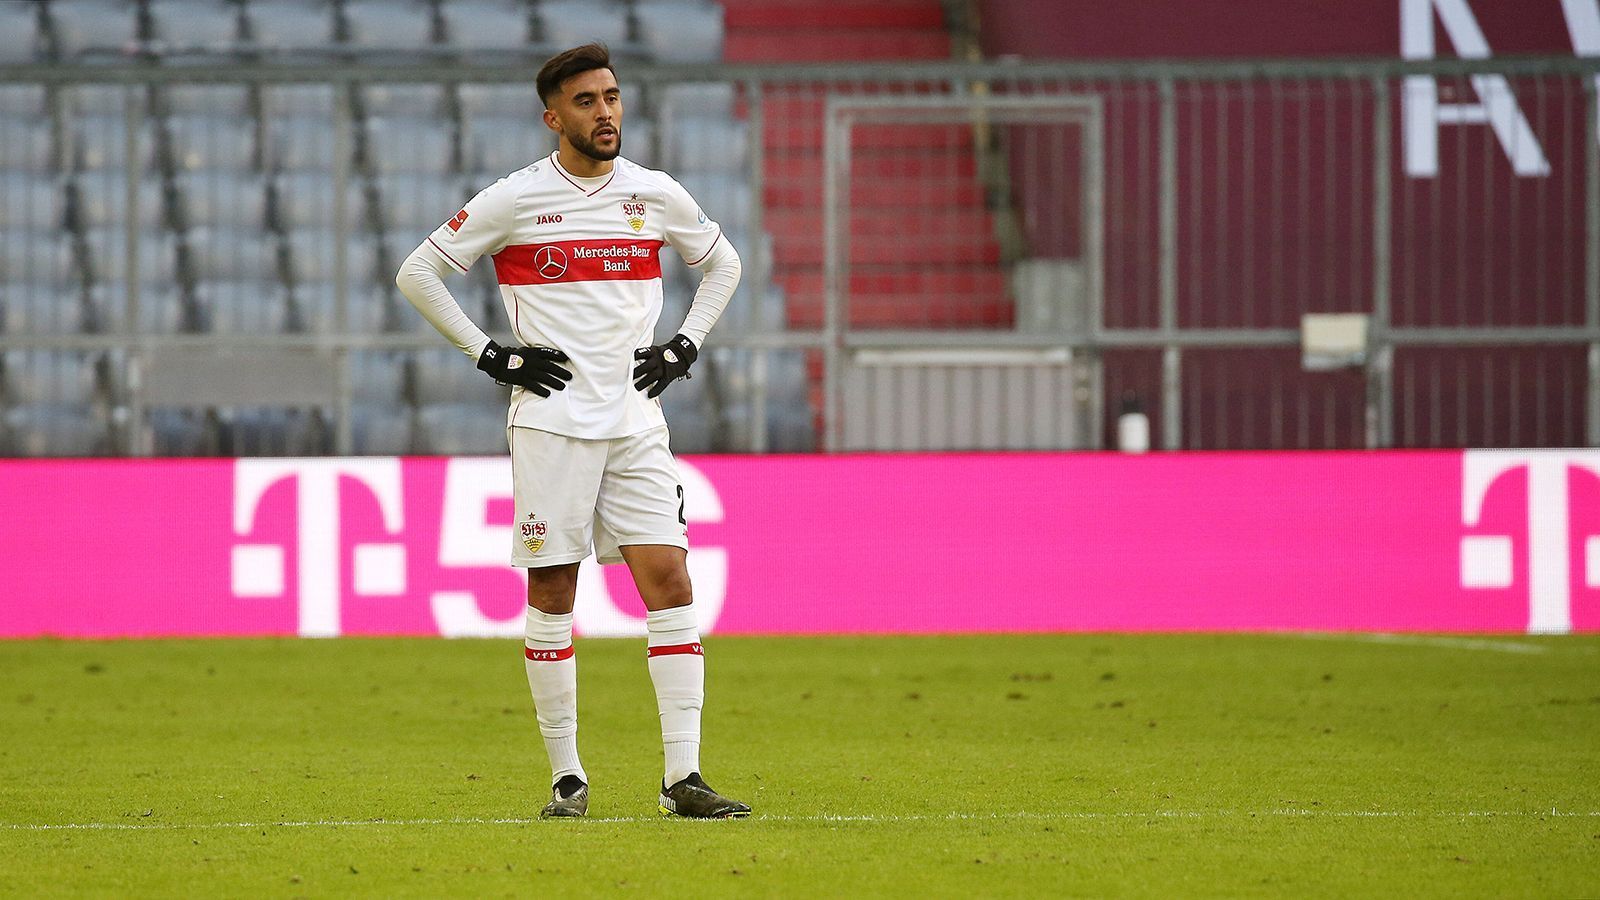 <strong>VfB Stuttgart: Nicolas Gonzalez</strong><br>
                Ablösesumme:&nbsp;11,26 Millionen Euro<br>Wechsel von: Argentinos Juniors zu VfB Stuttgart<br>Zeitpunkt des Wechsels: Juli 2018
